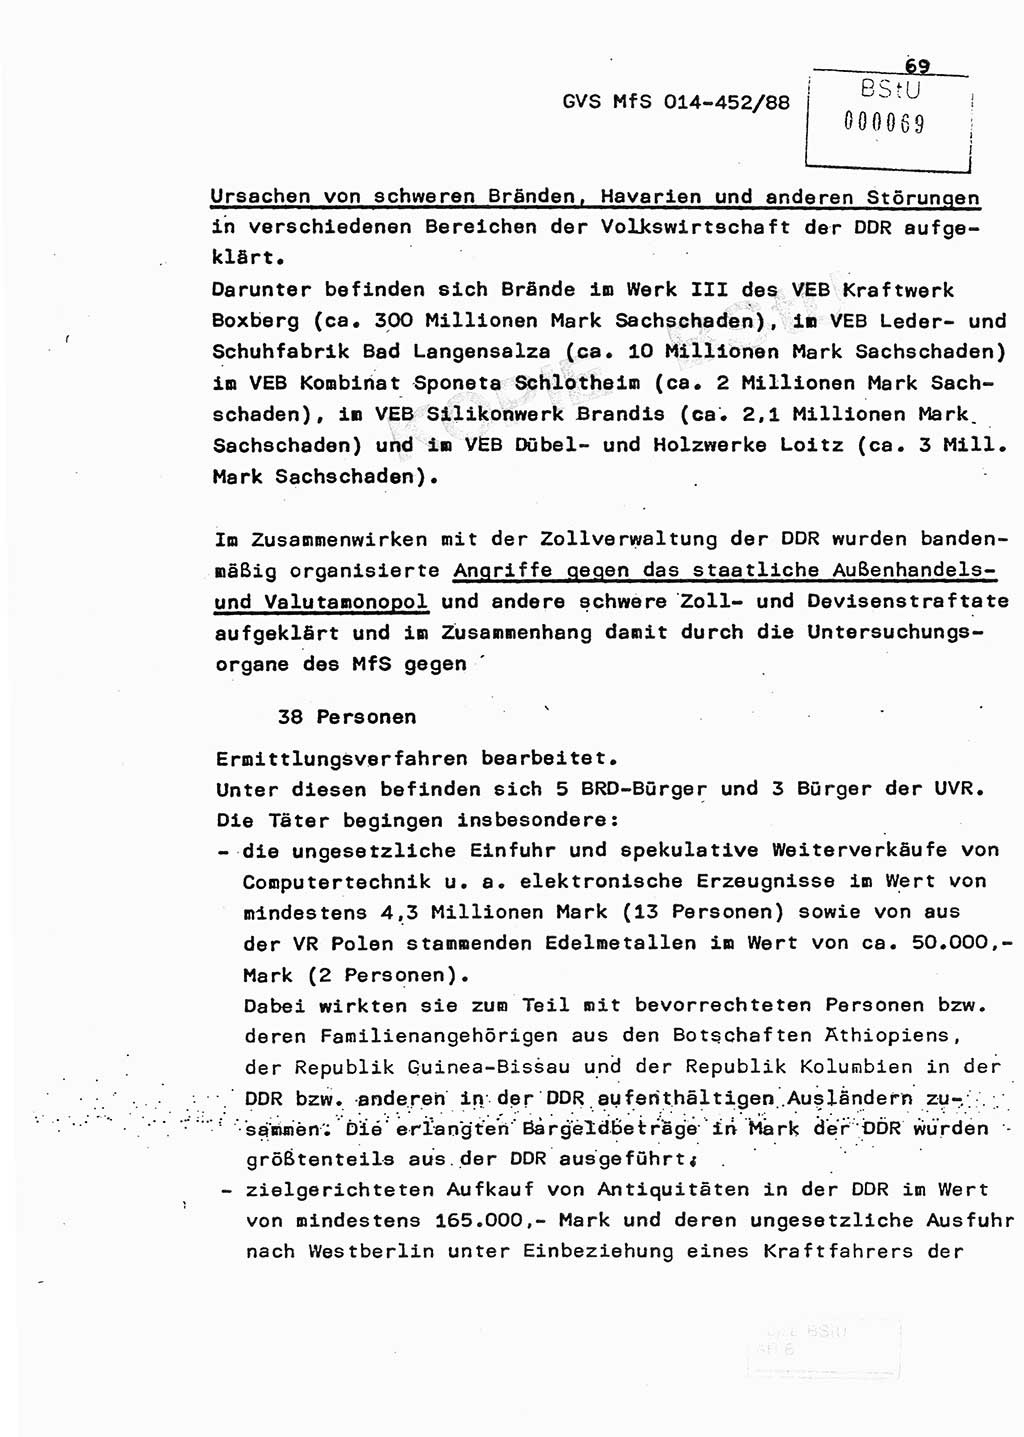 Jahresbericht der Hauptabteilung (HA) Ⅸ 1987, Einschätzung der Wirksamkeit der Untersuchungsarbeit im Jahre 1987, Ministerium für Staatssicherheit (MfS) der Deutschen Demokratischen Republik (DDR), Hauptabteilung Ⅸ, Geheime Verschlußsache (GVS) o014-452/88, Berlin 1988, Seite 69 (Einsch. MfS DDR HA Ⅸ GVS o014-452/88 1987, S. 69)